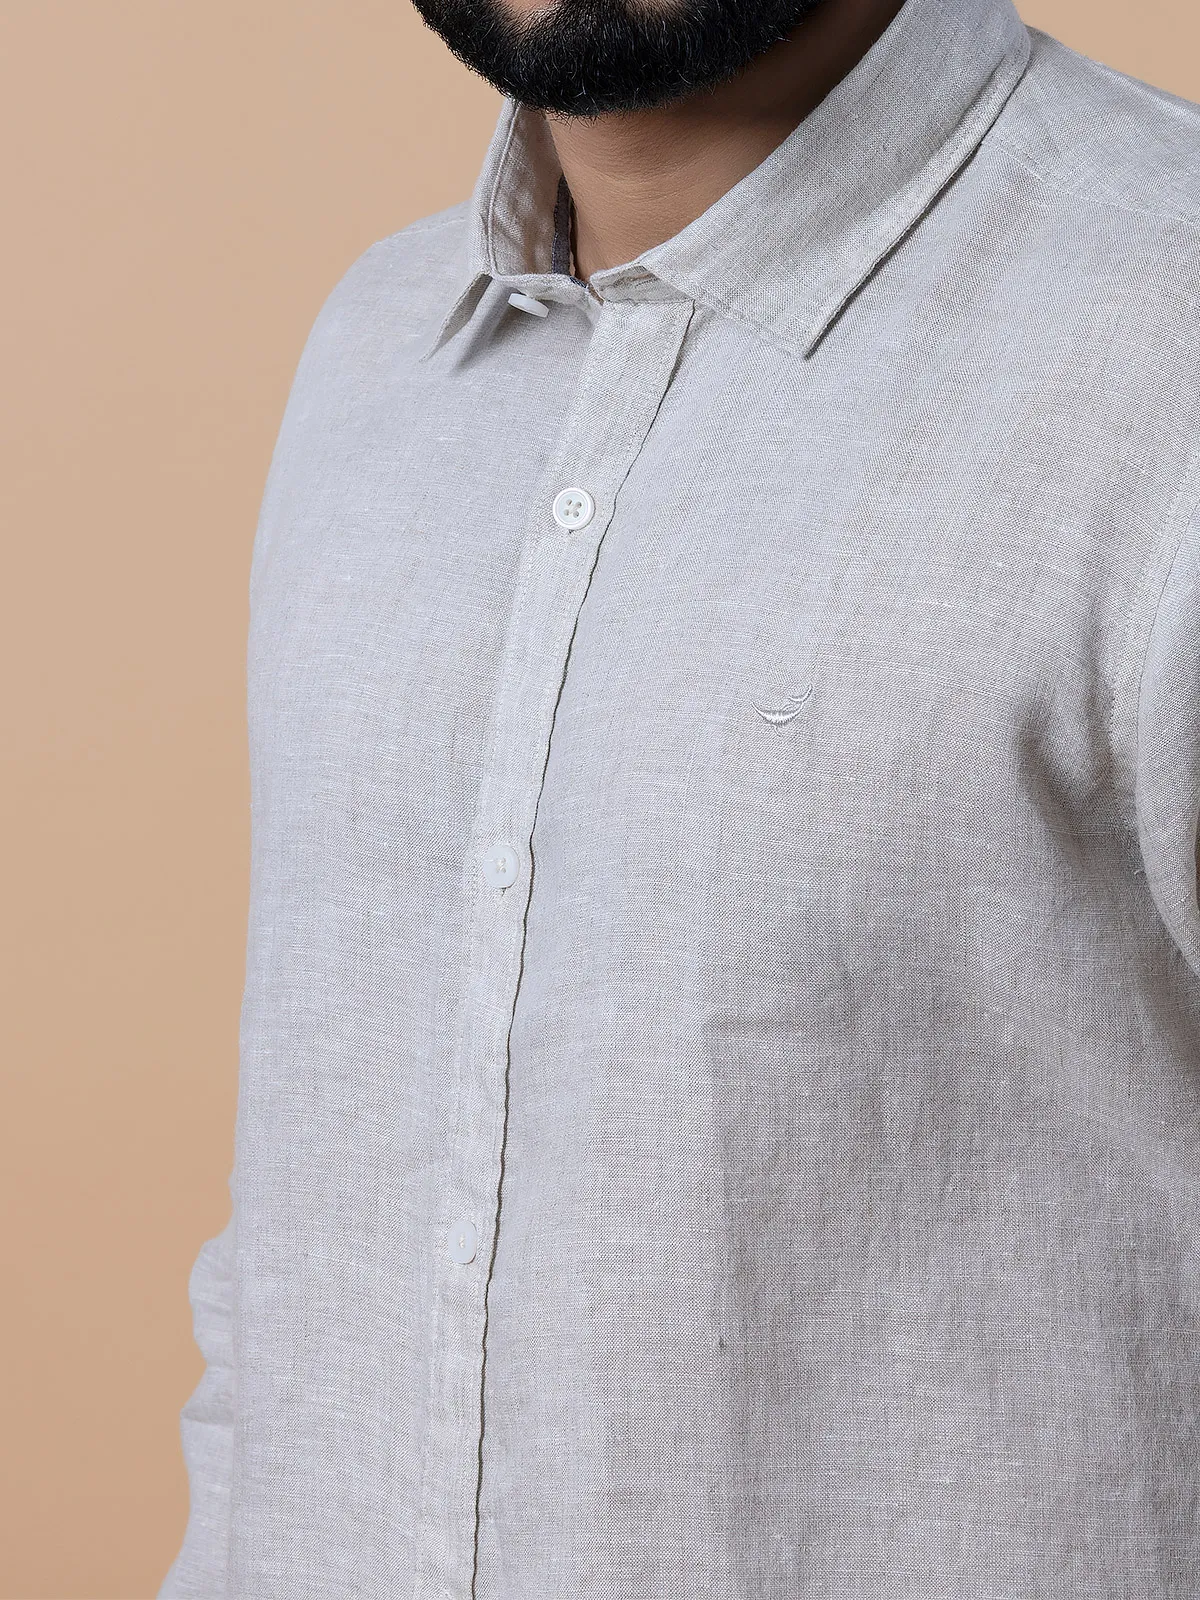 Frio beige linen plain shirt